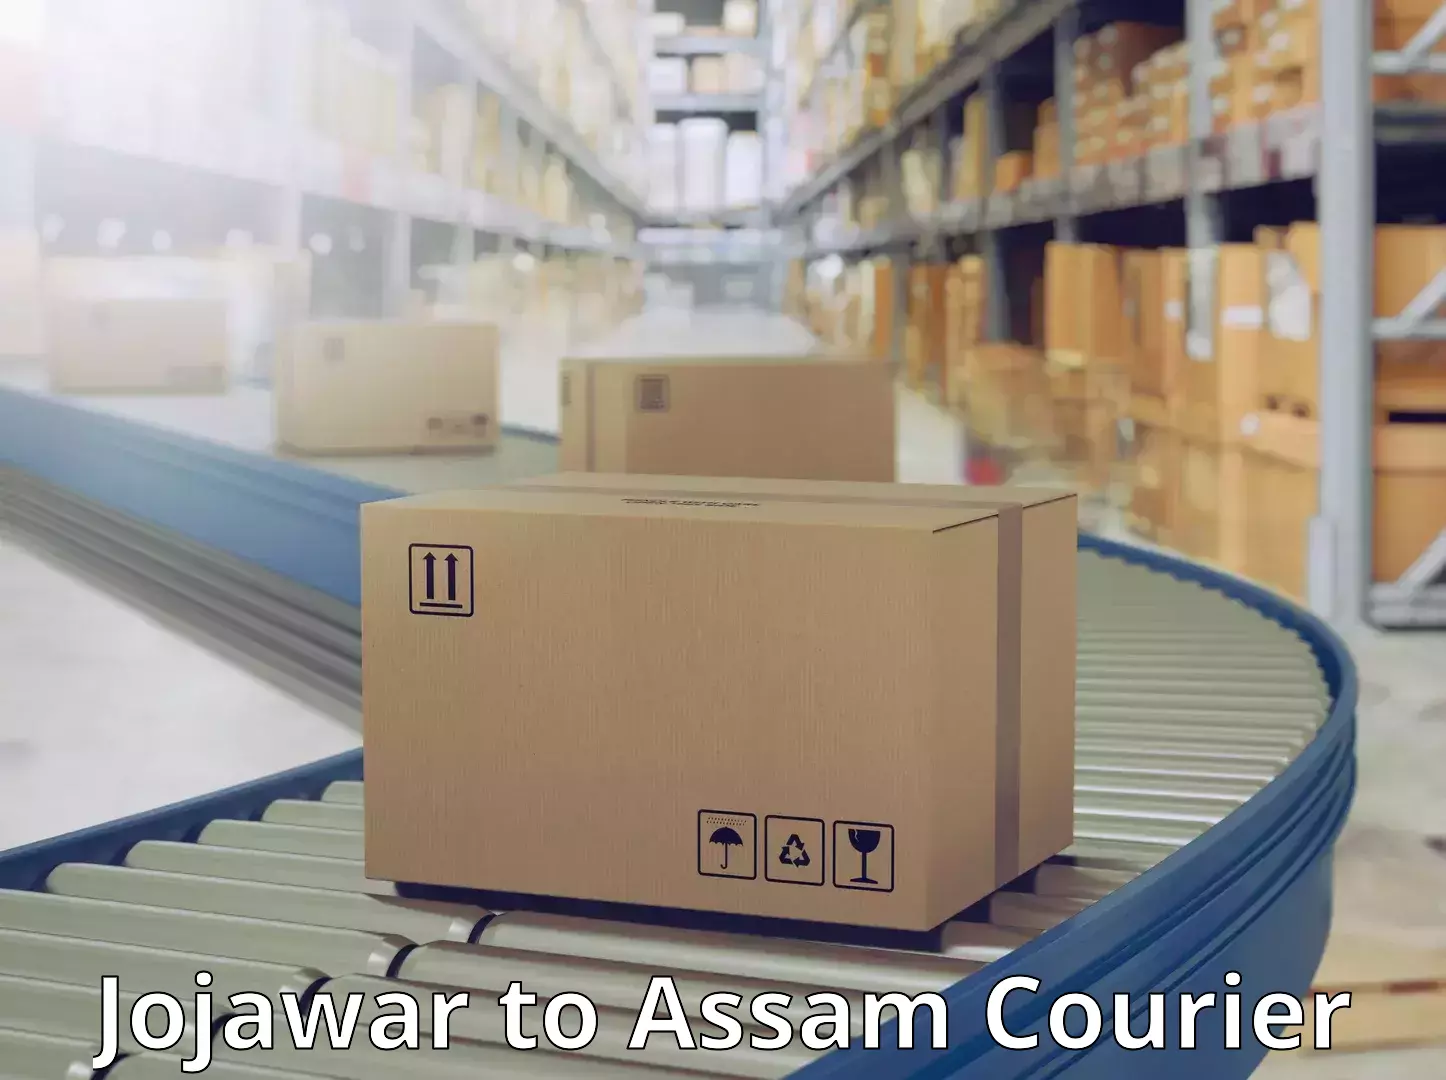 Global parcel delivery Jojawar to Assam